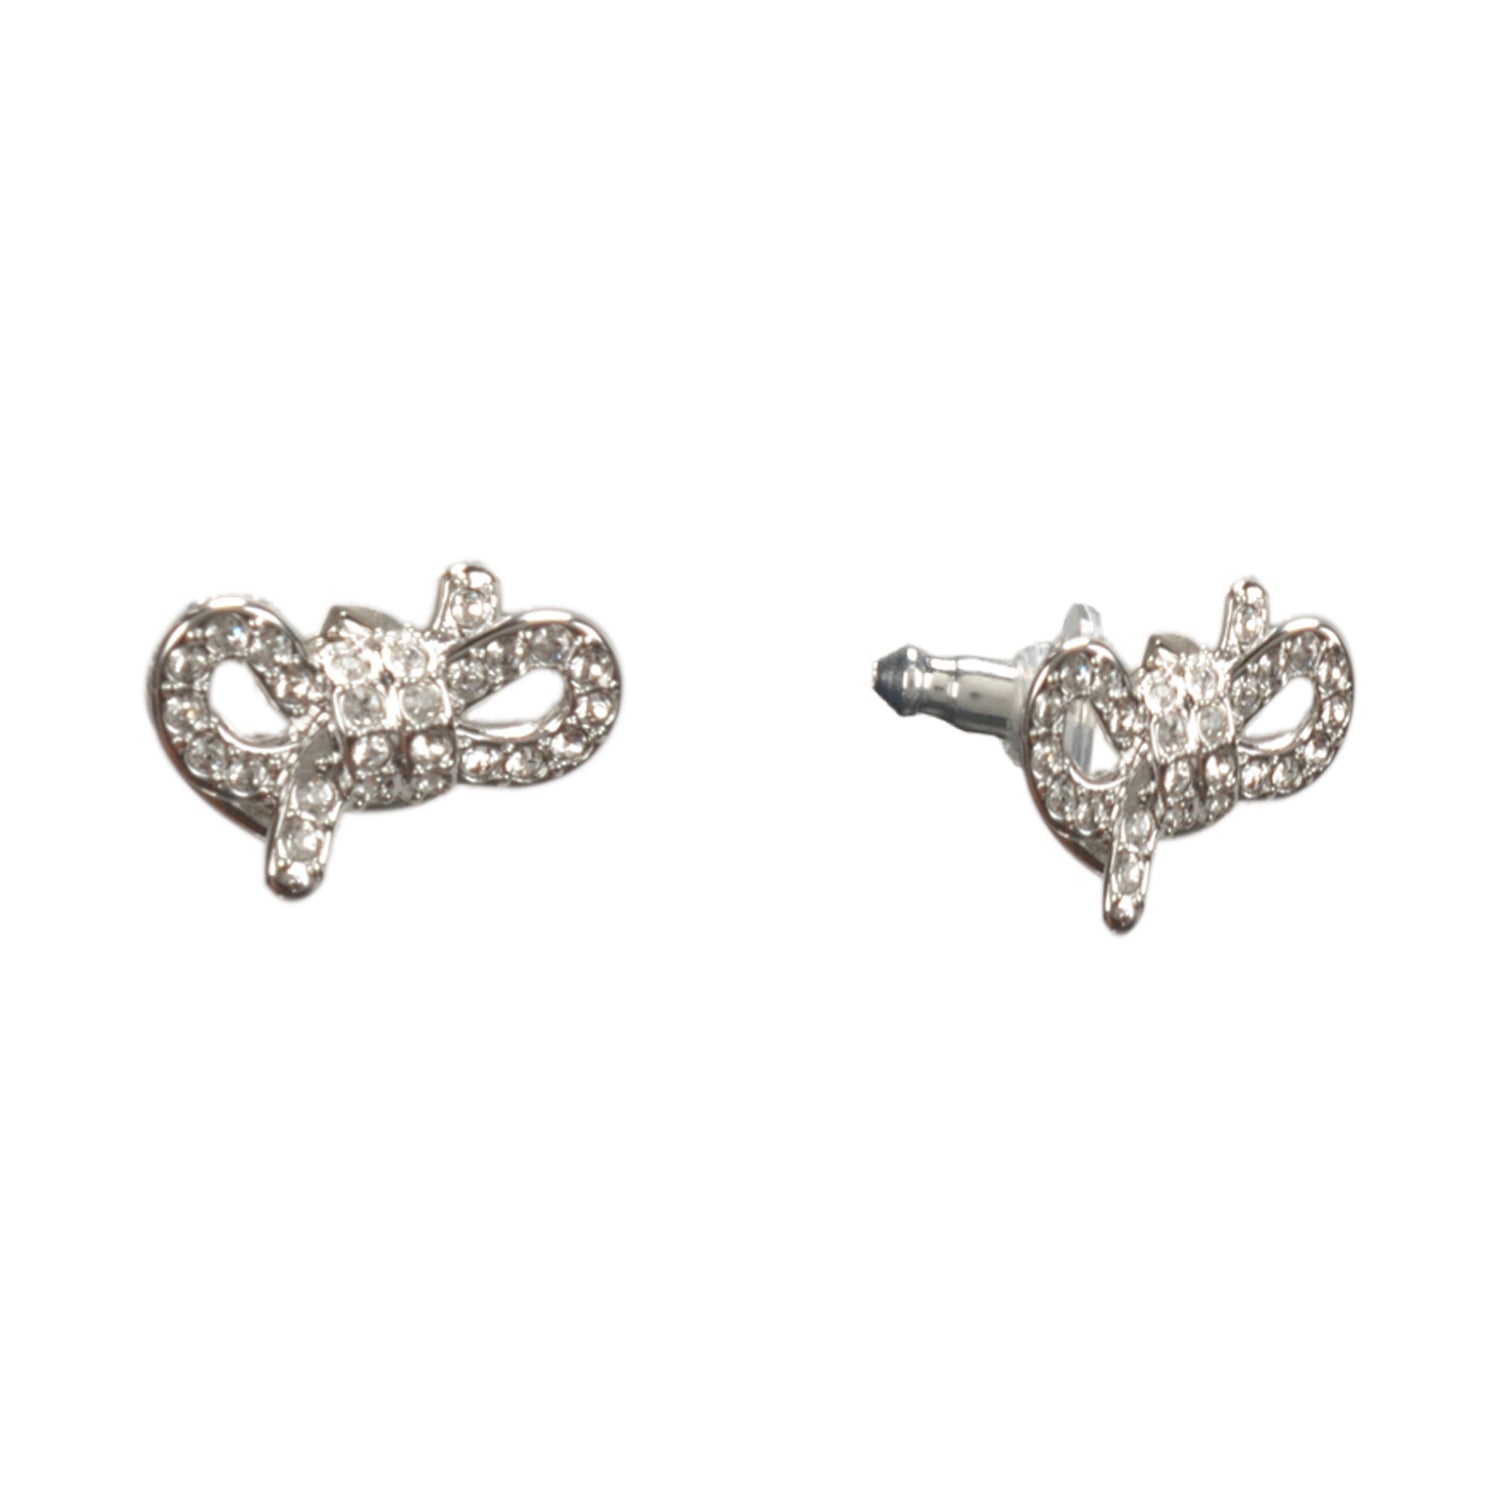 Shop Luxury Swarovski Necklace Set Online